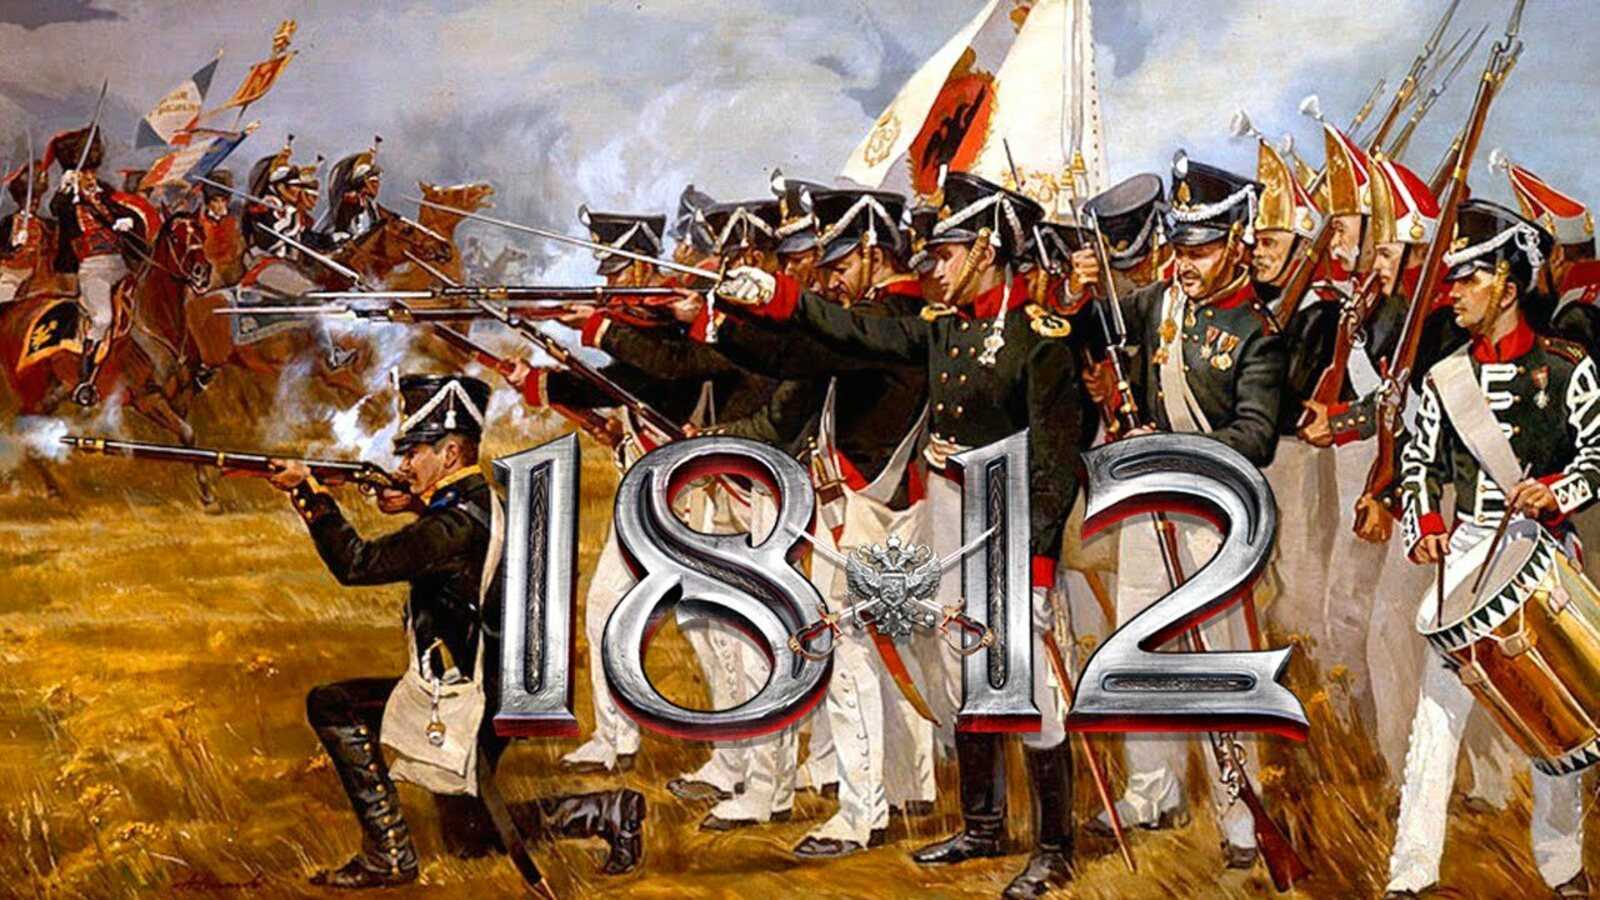 1812 год в мировой истории